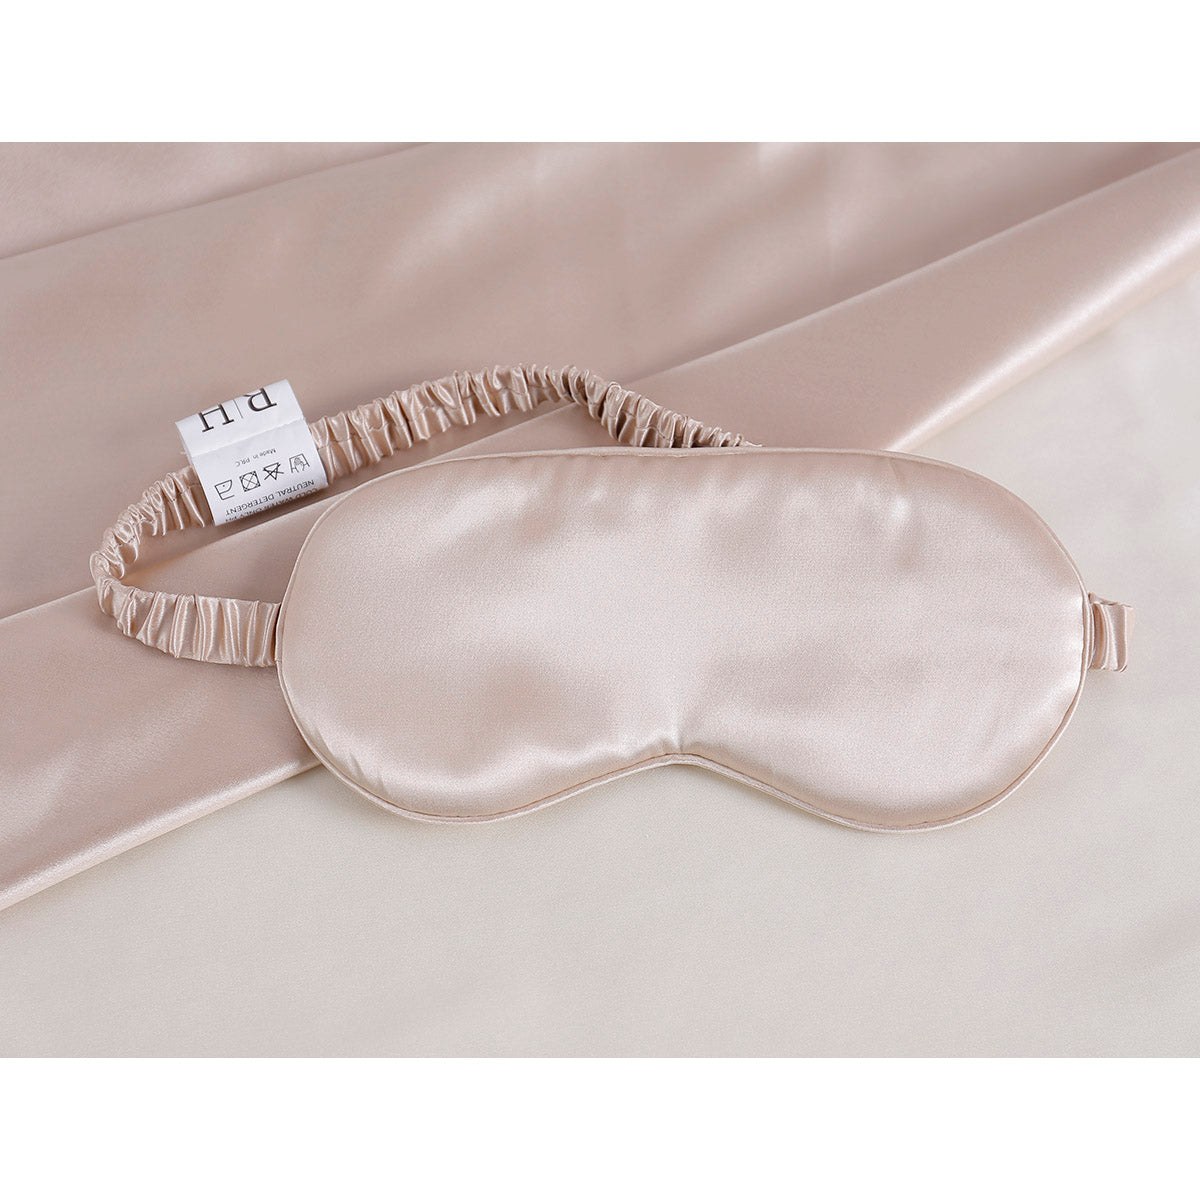 Μεταξωτή μάσκα ύπνου σε κουτί δώρου Art 12169 Άμμου Beauty Home Default Title από την εταιρεία Beauty Home